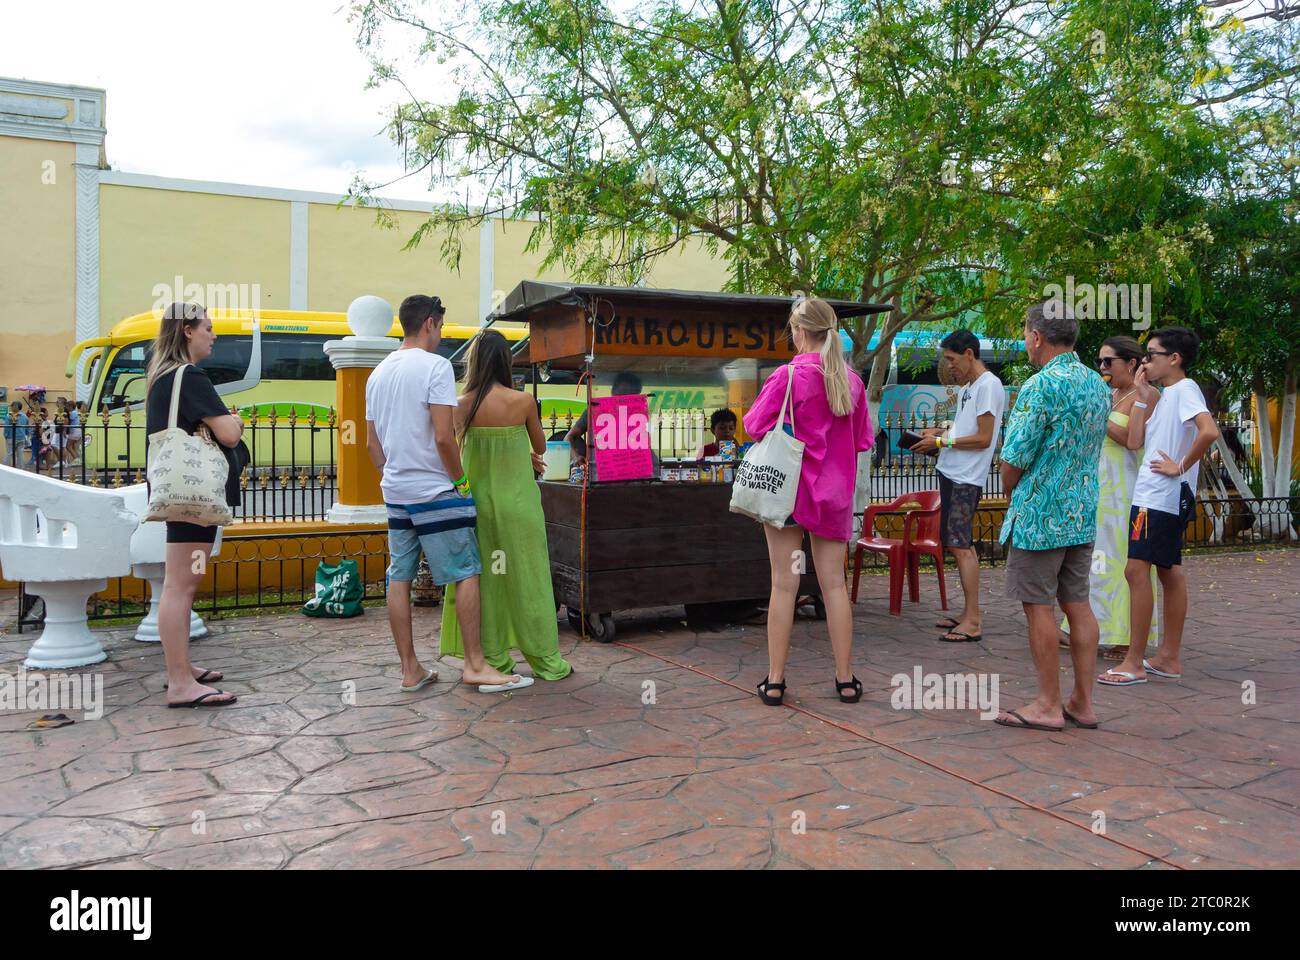 Valladolid, Yucatan, Mexique, les touristes achètent des marquisitas à un stand dans le parc, éditorial seulement. Banque D'Images